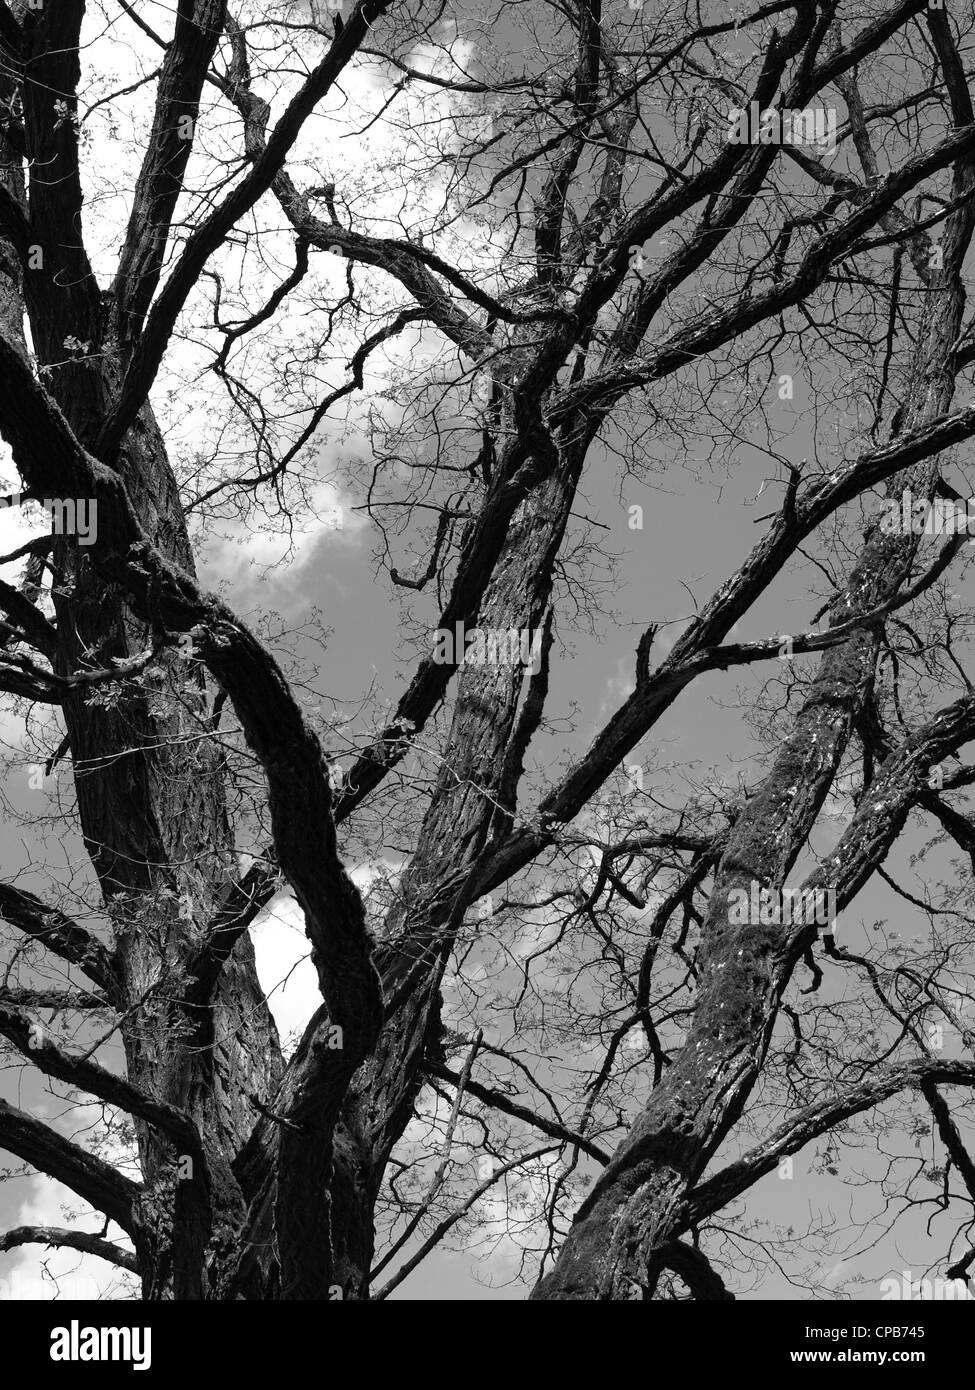 treetop of an old walnut tree in spring / Baumkrone eines alten Walnussbaumes im Frühling Stock Photo